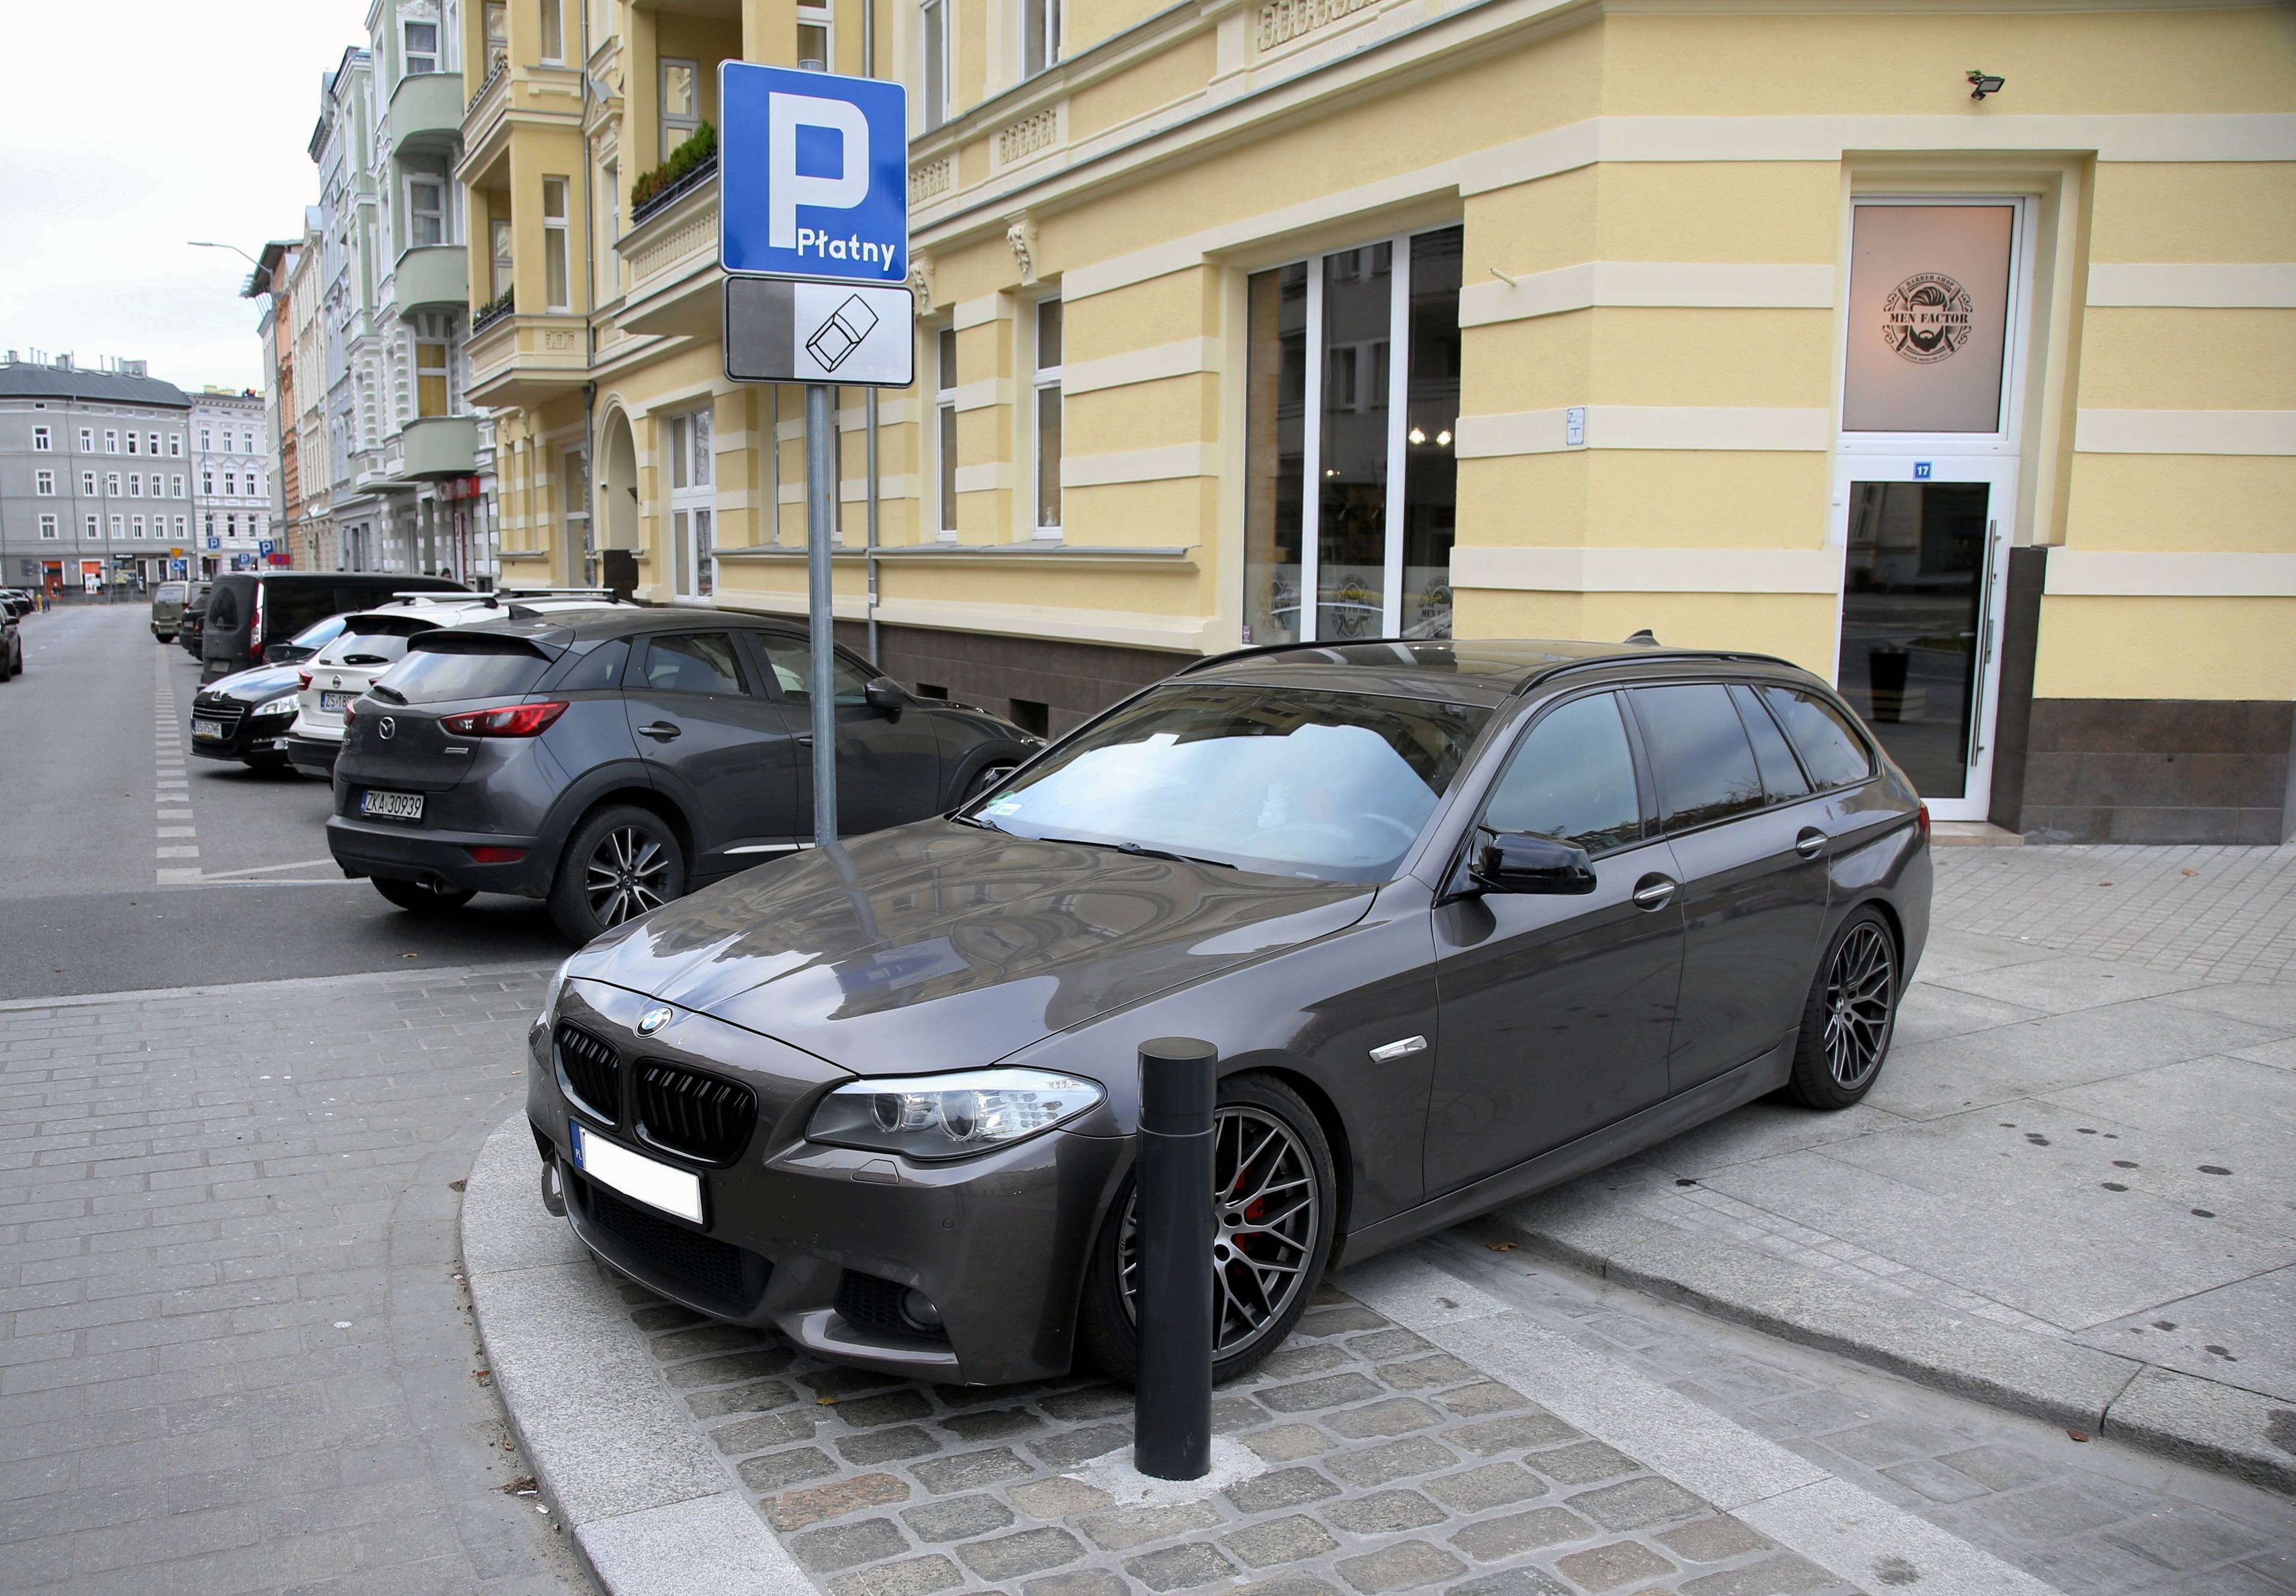 Czarne BMW parkujące nieprawidłowo i zajmujące cały chodnik przy słupku, który powinien utrudnić postawienie tam samochodu